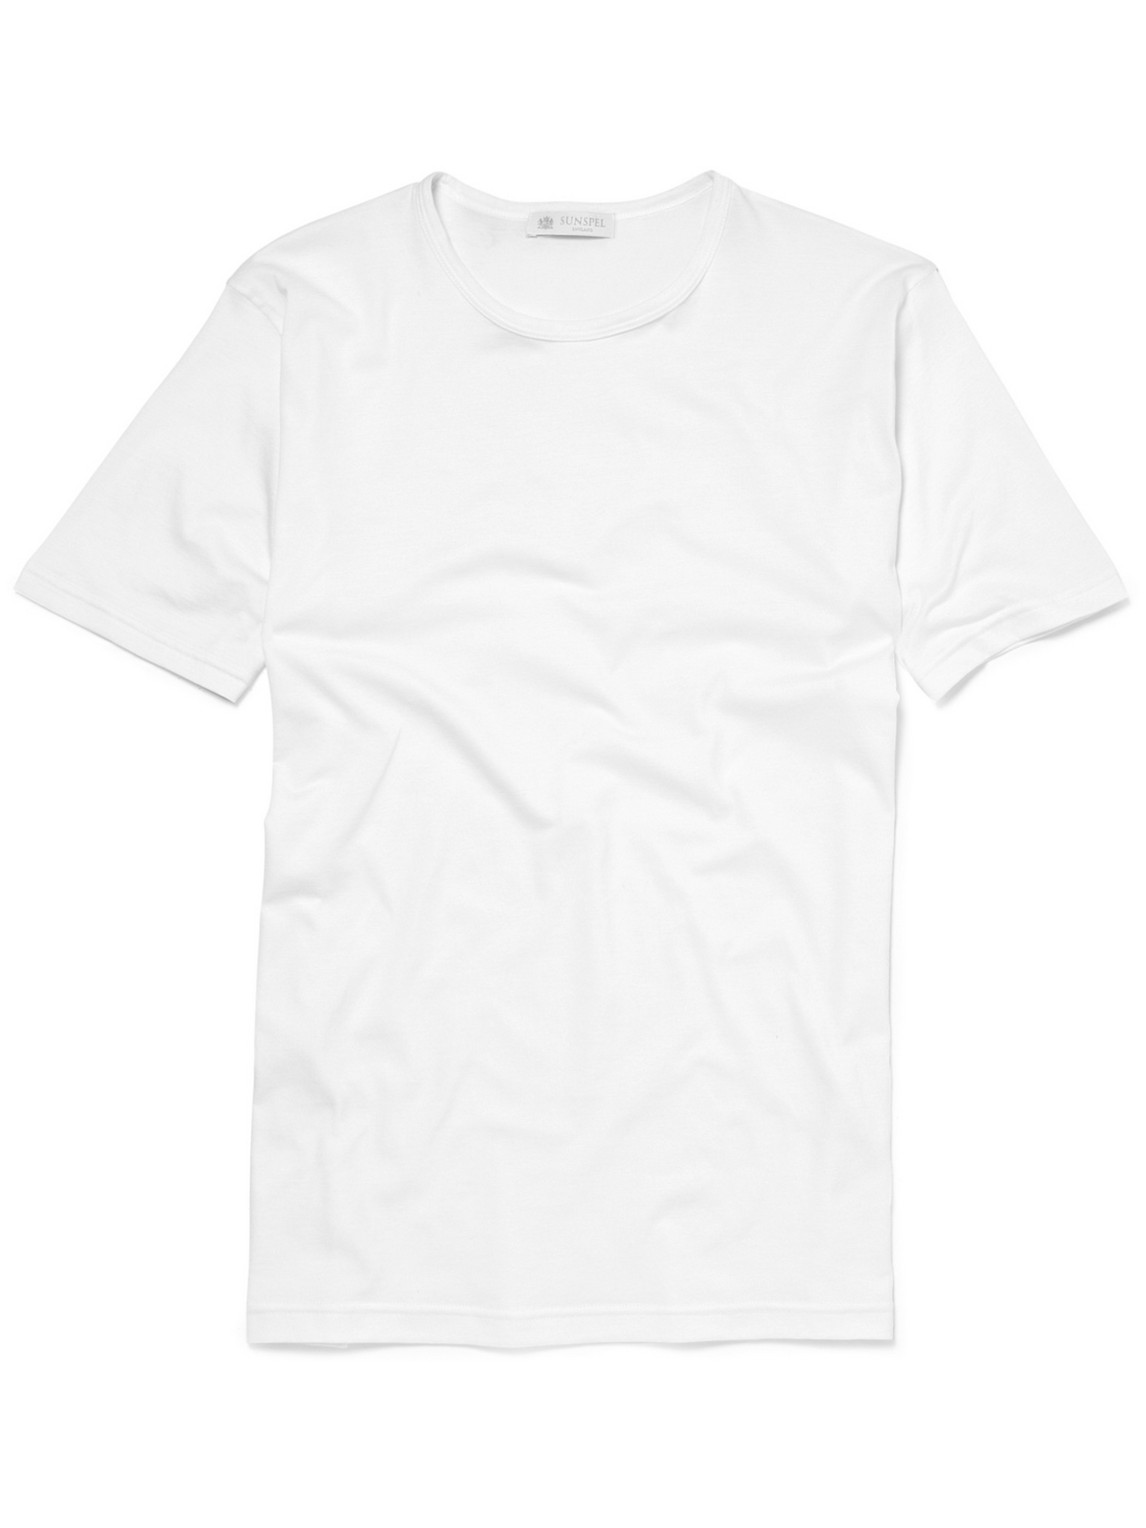 Sunspel Superfine Cotton Underwear T-shirt In White